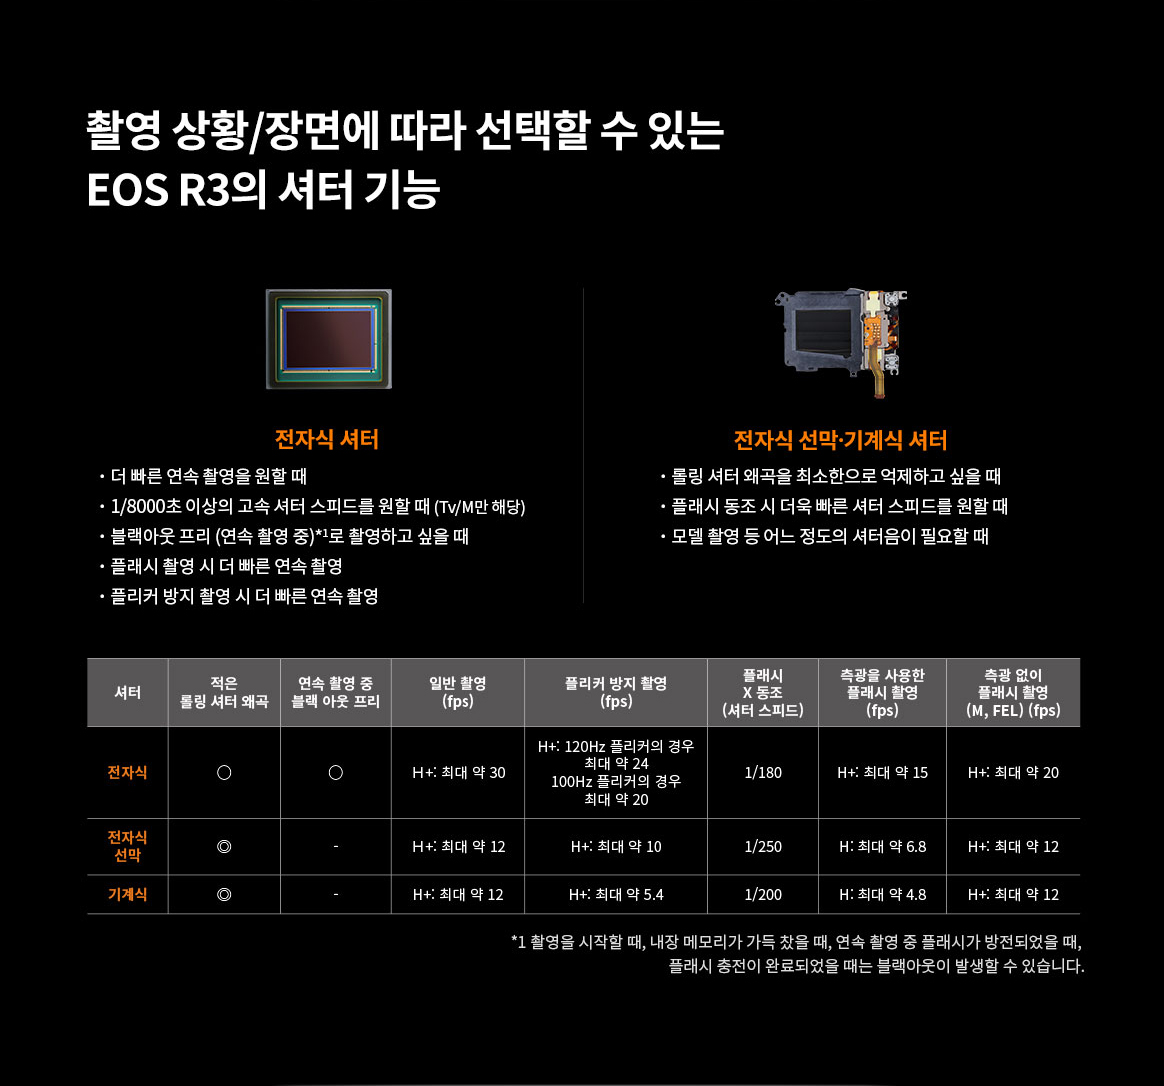 촬영 상화/장면에 따라 선택할 수 있는 EOS R3의 셔터 기능